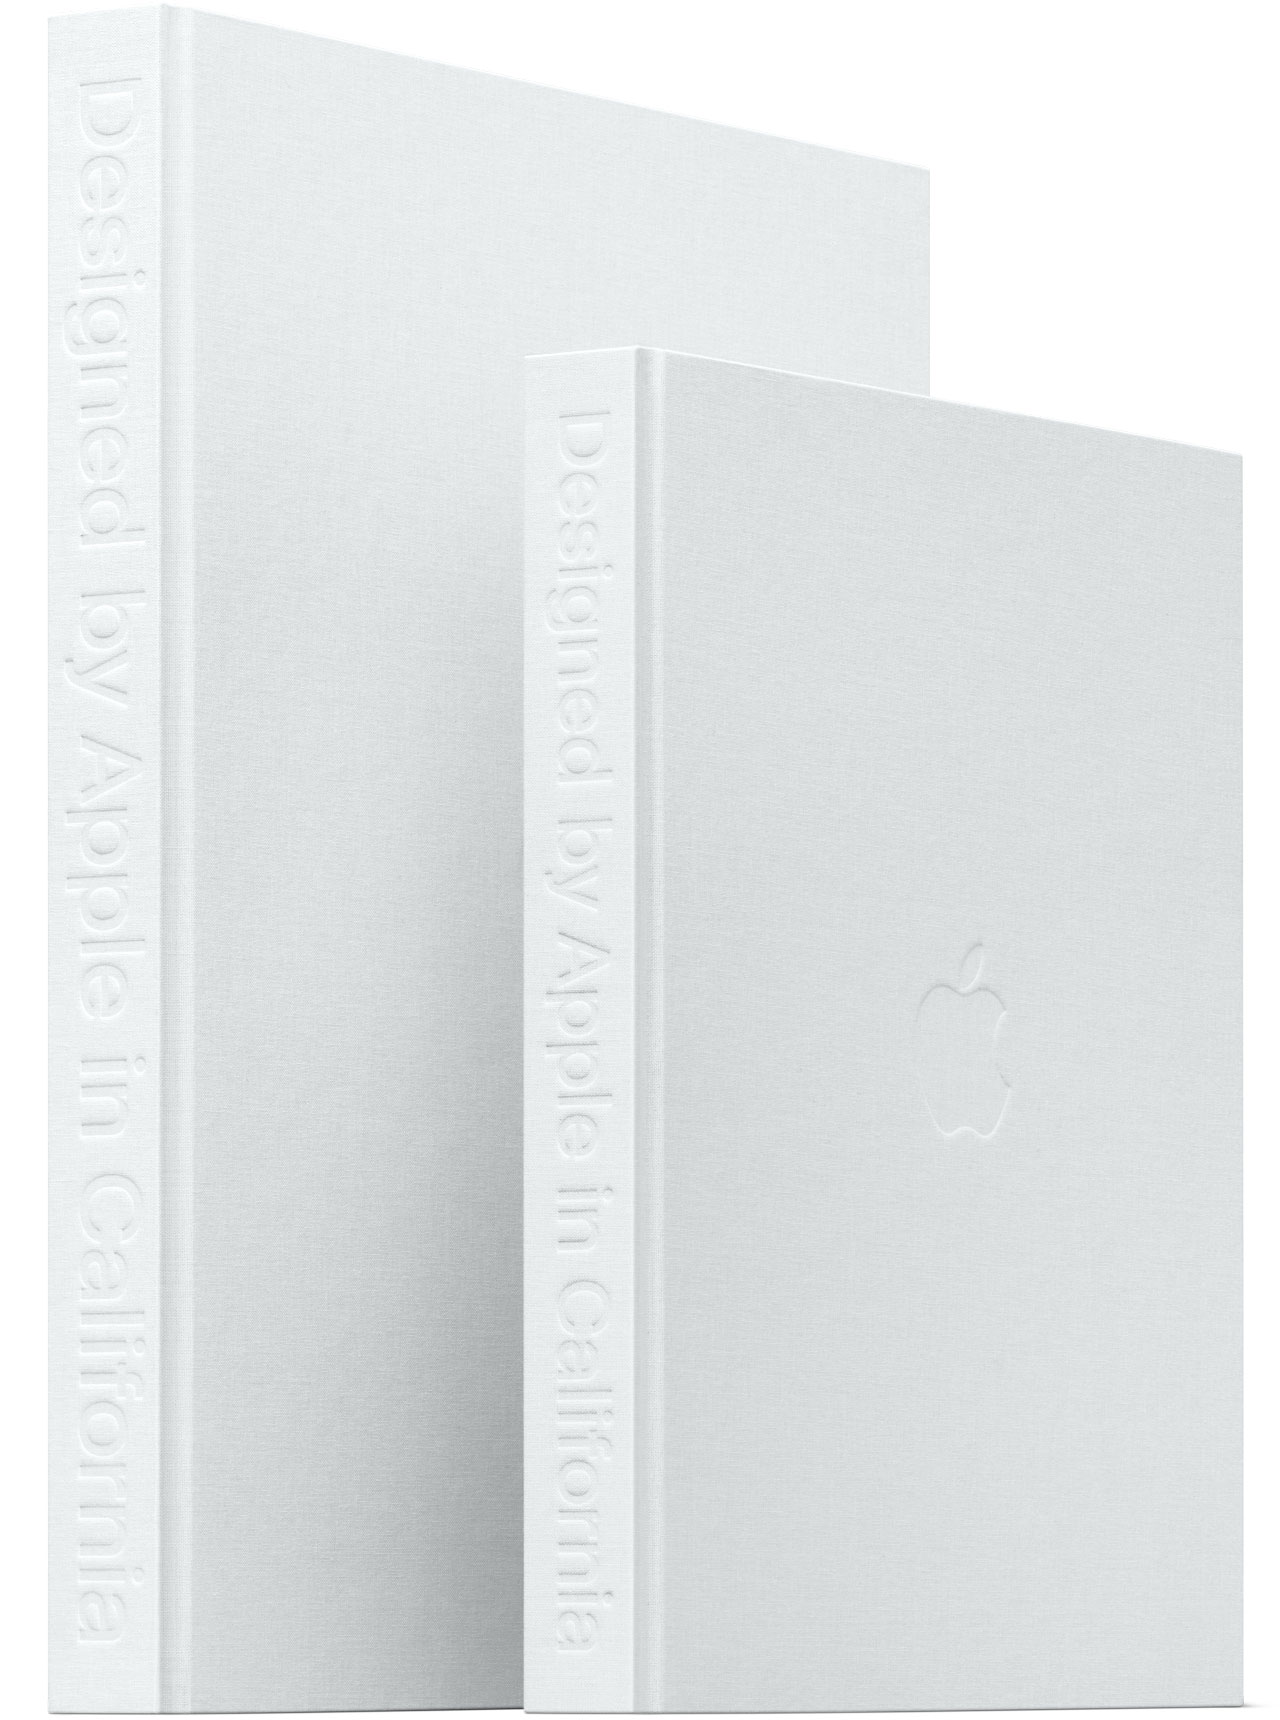 Livro "Designed by Apple in California"